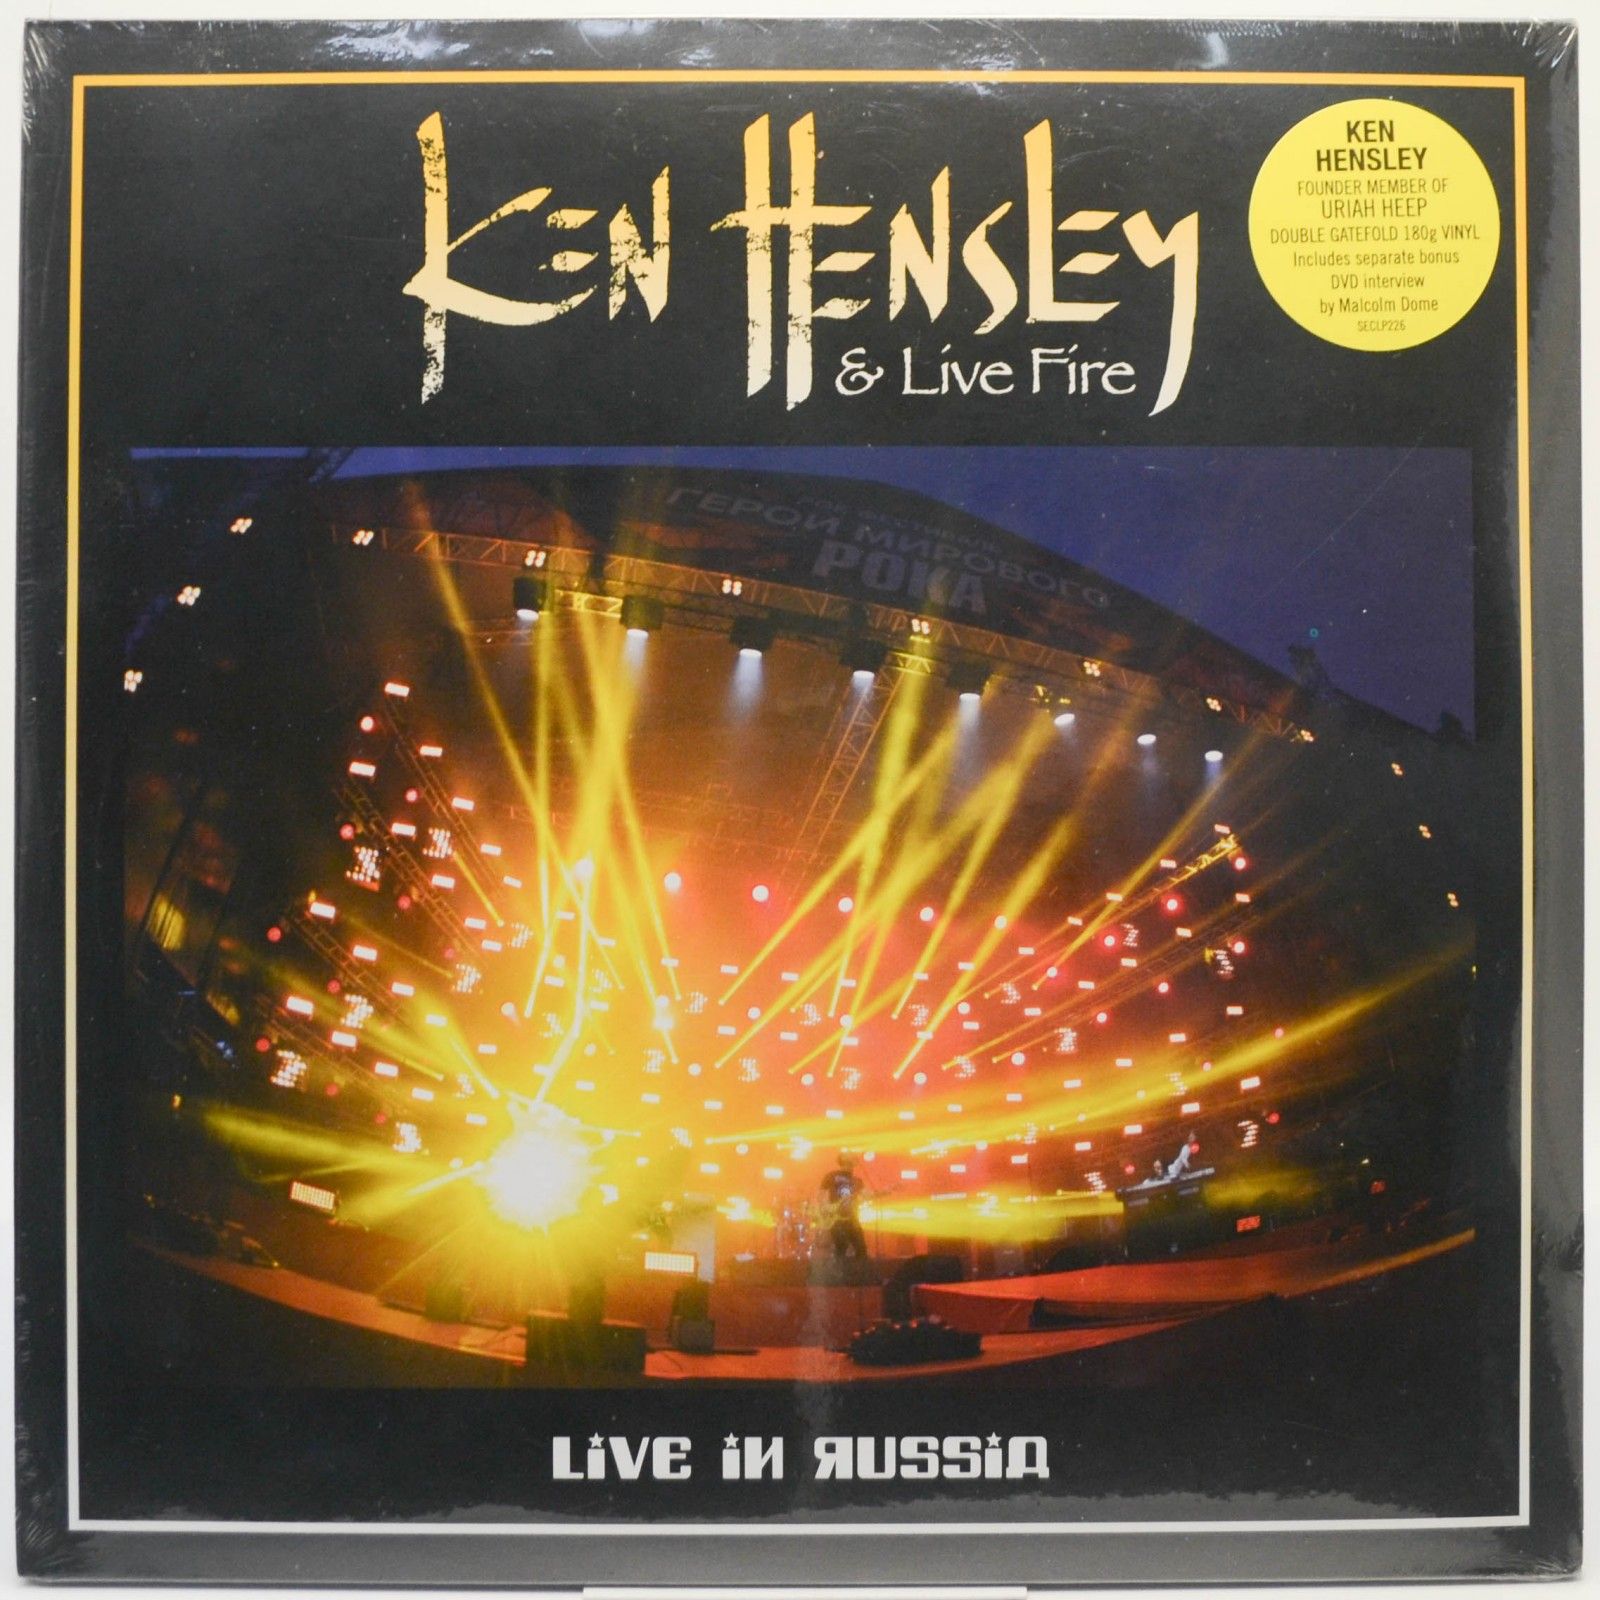 Ken Hensley & Live Fire — Live In Russia (2LP), 2019